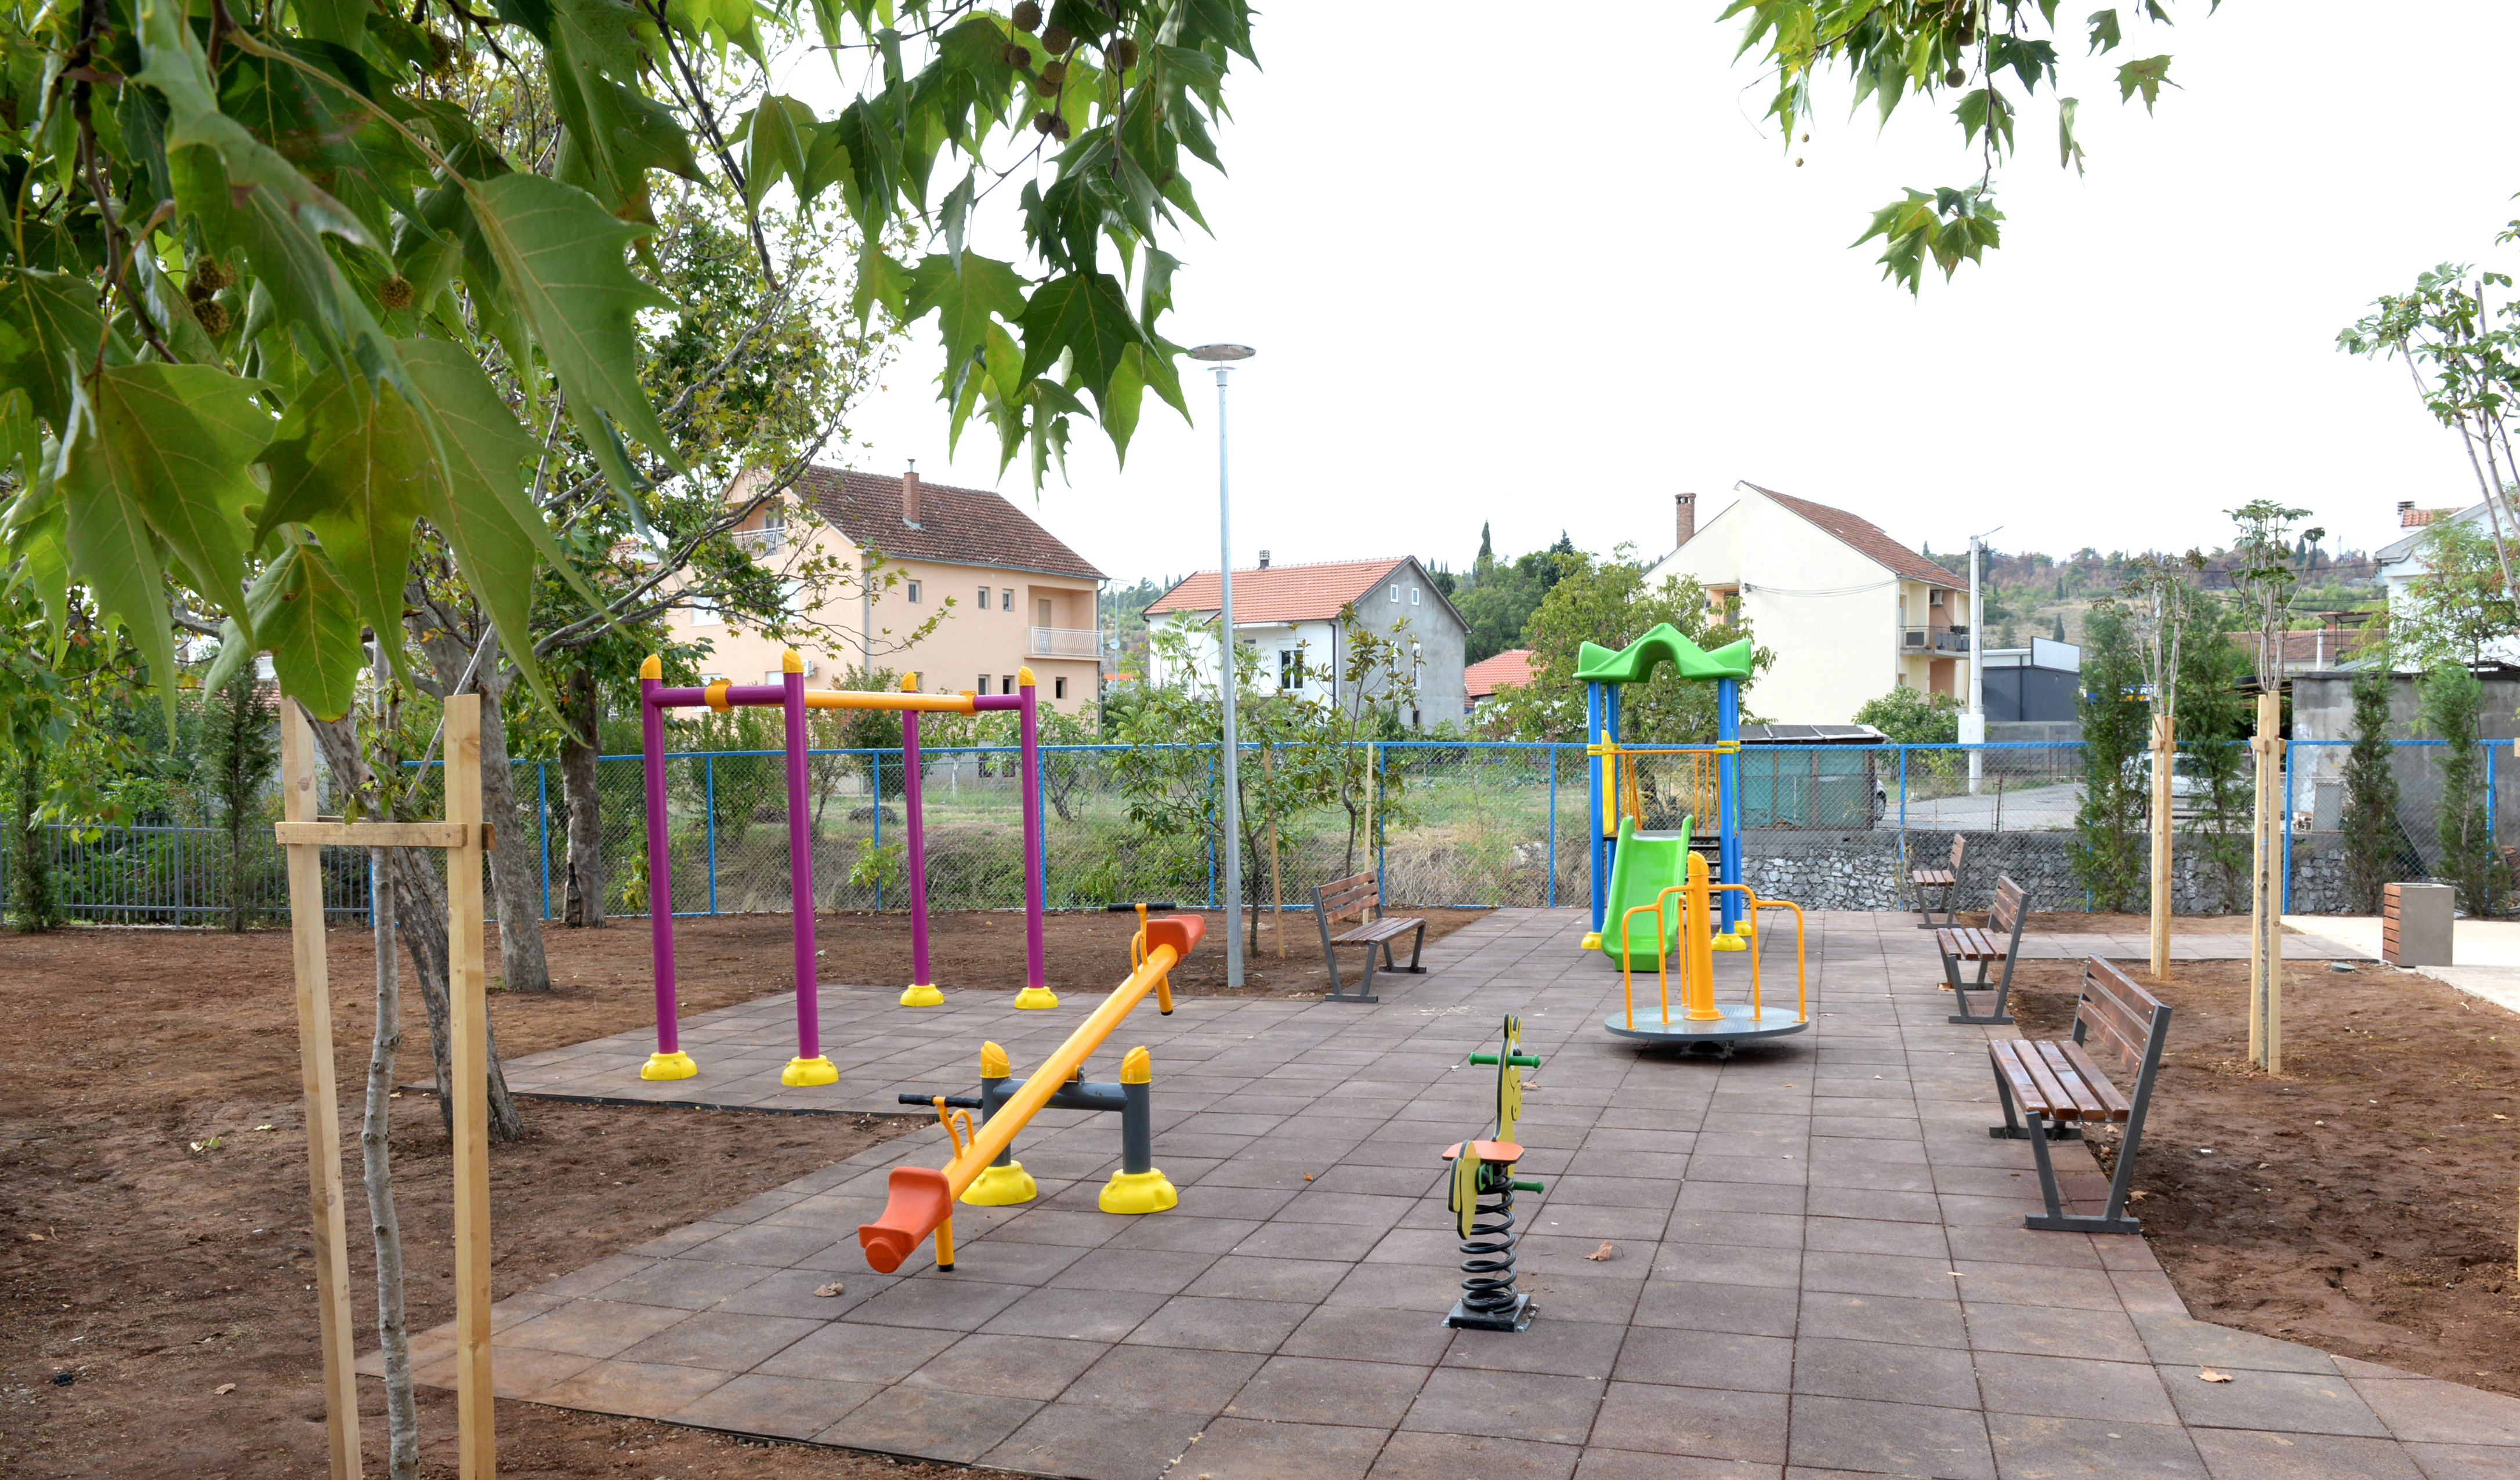 Završeno uređenje objekta MZ "Masline" i temeljna rekonstrukcija dječijeg igrališta